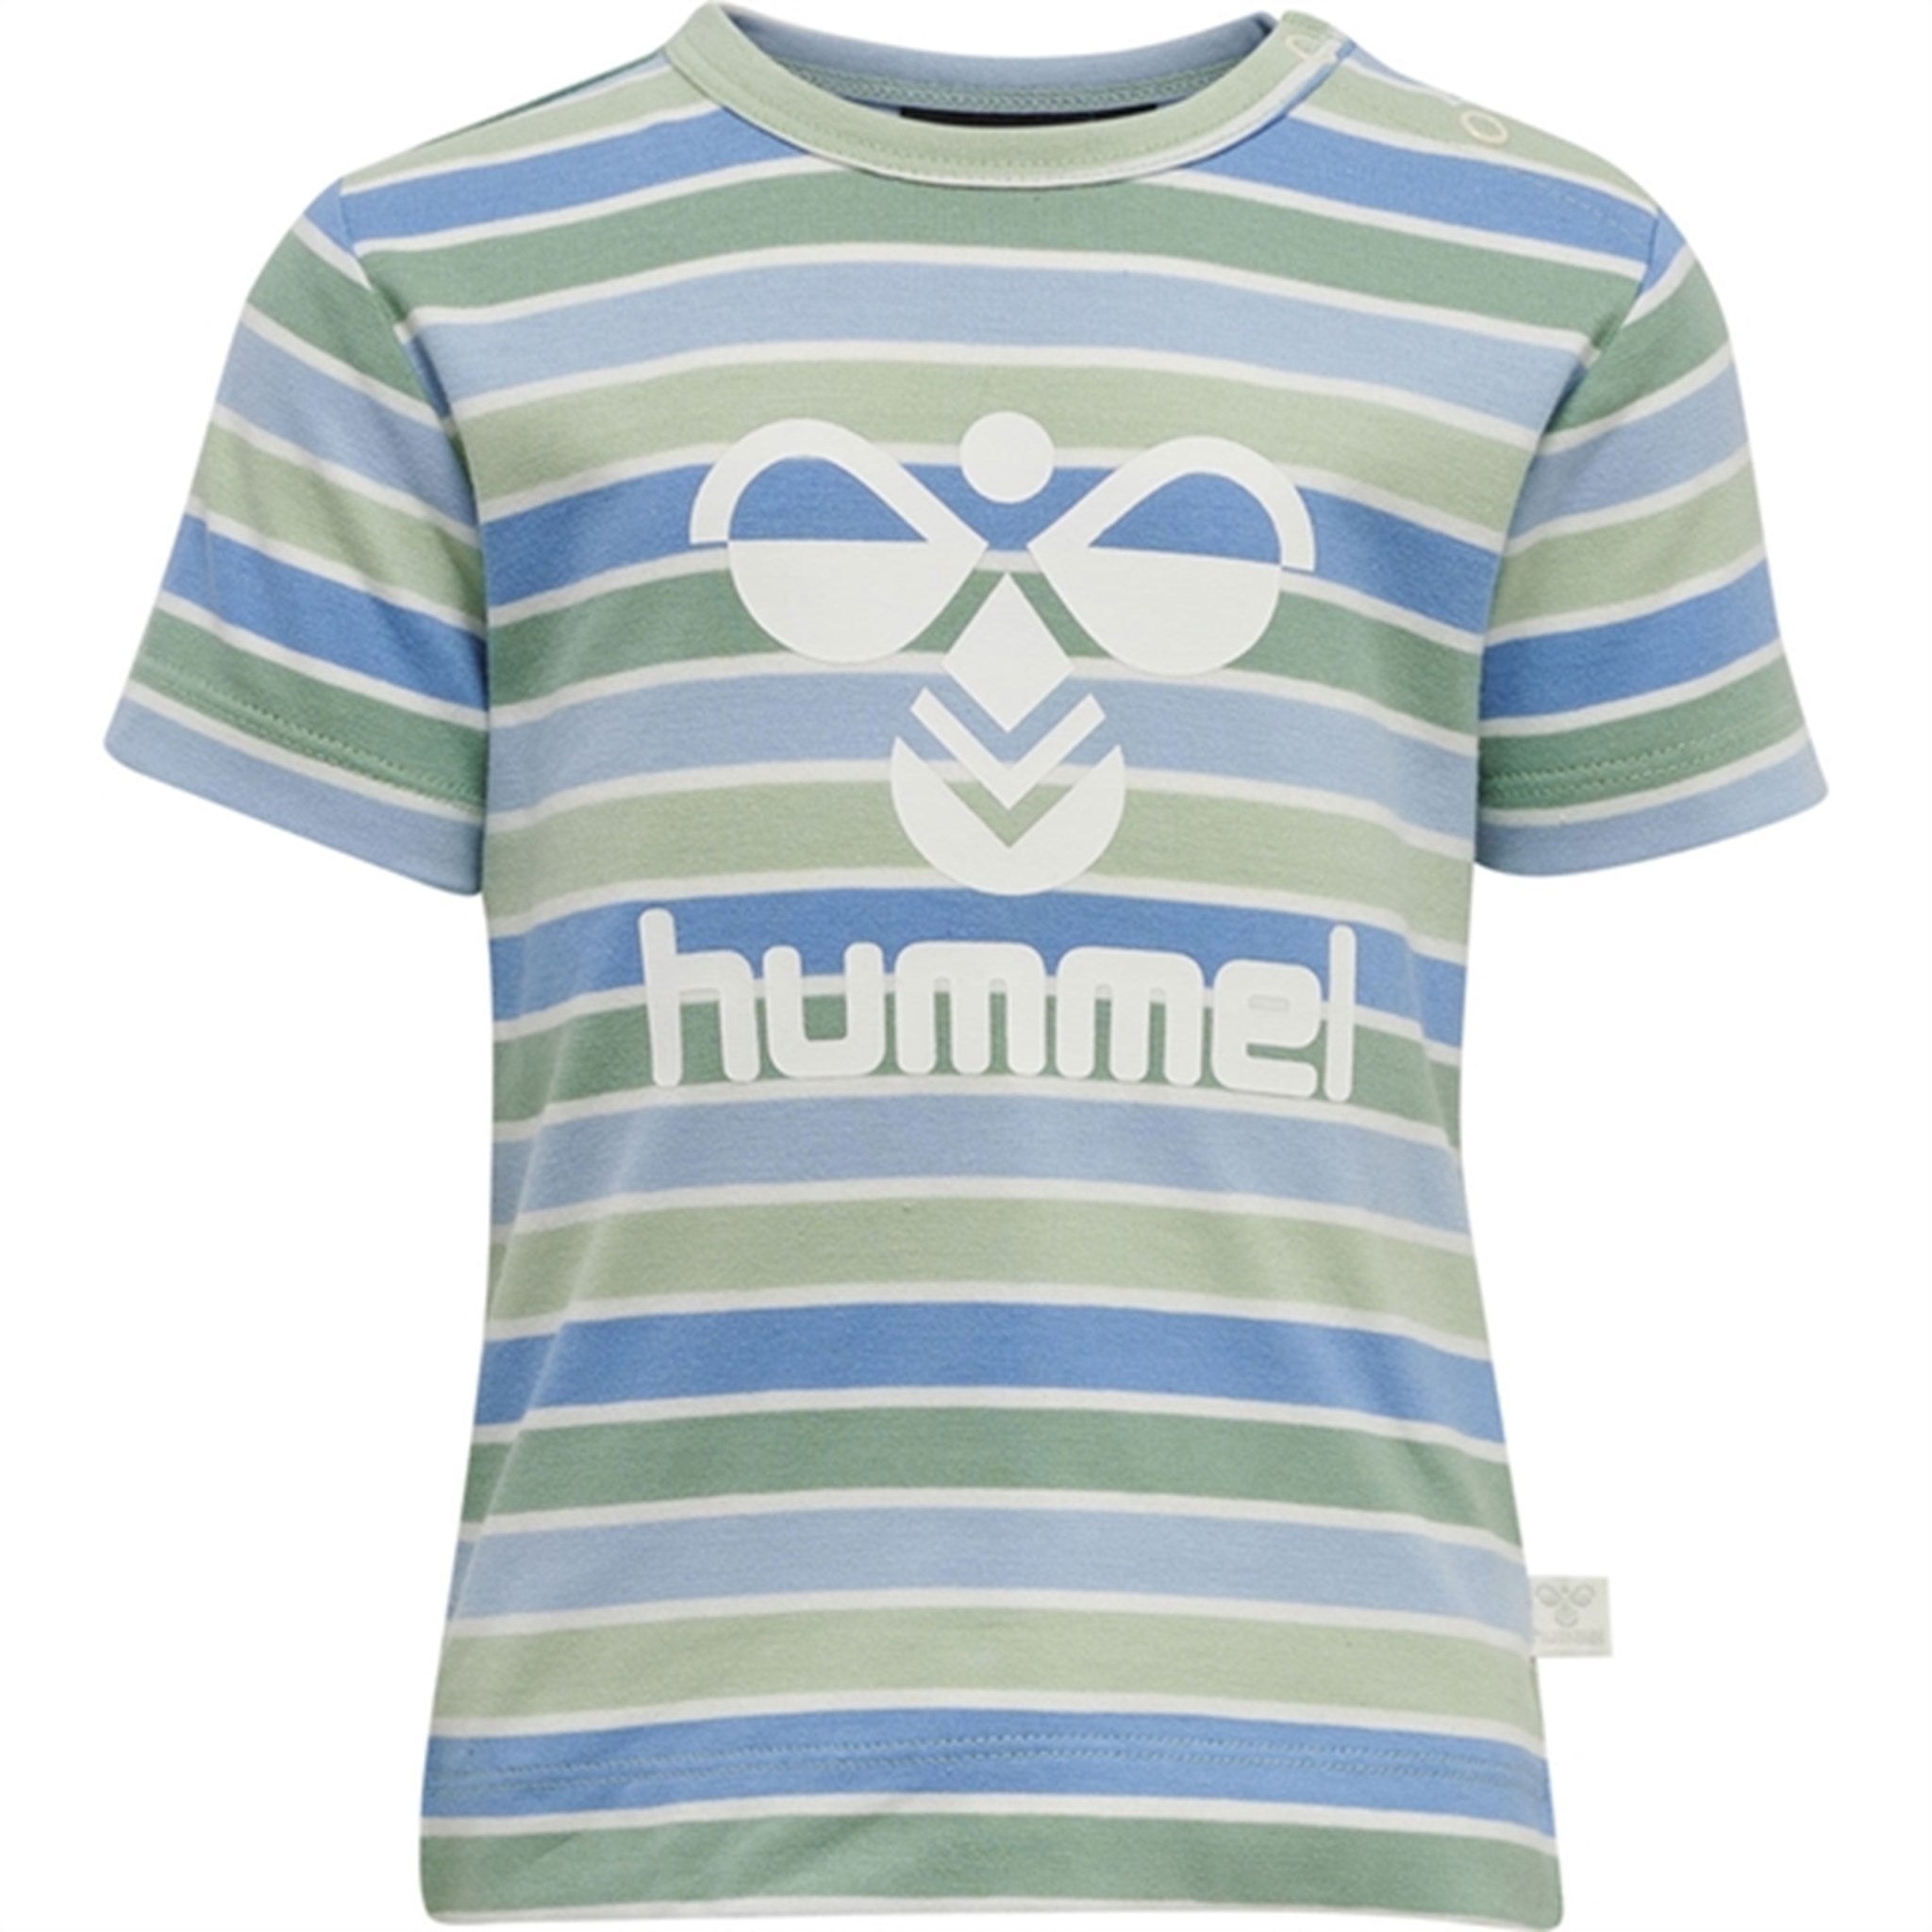 Hummel Grayed Jade Pelle T-shirt